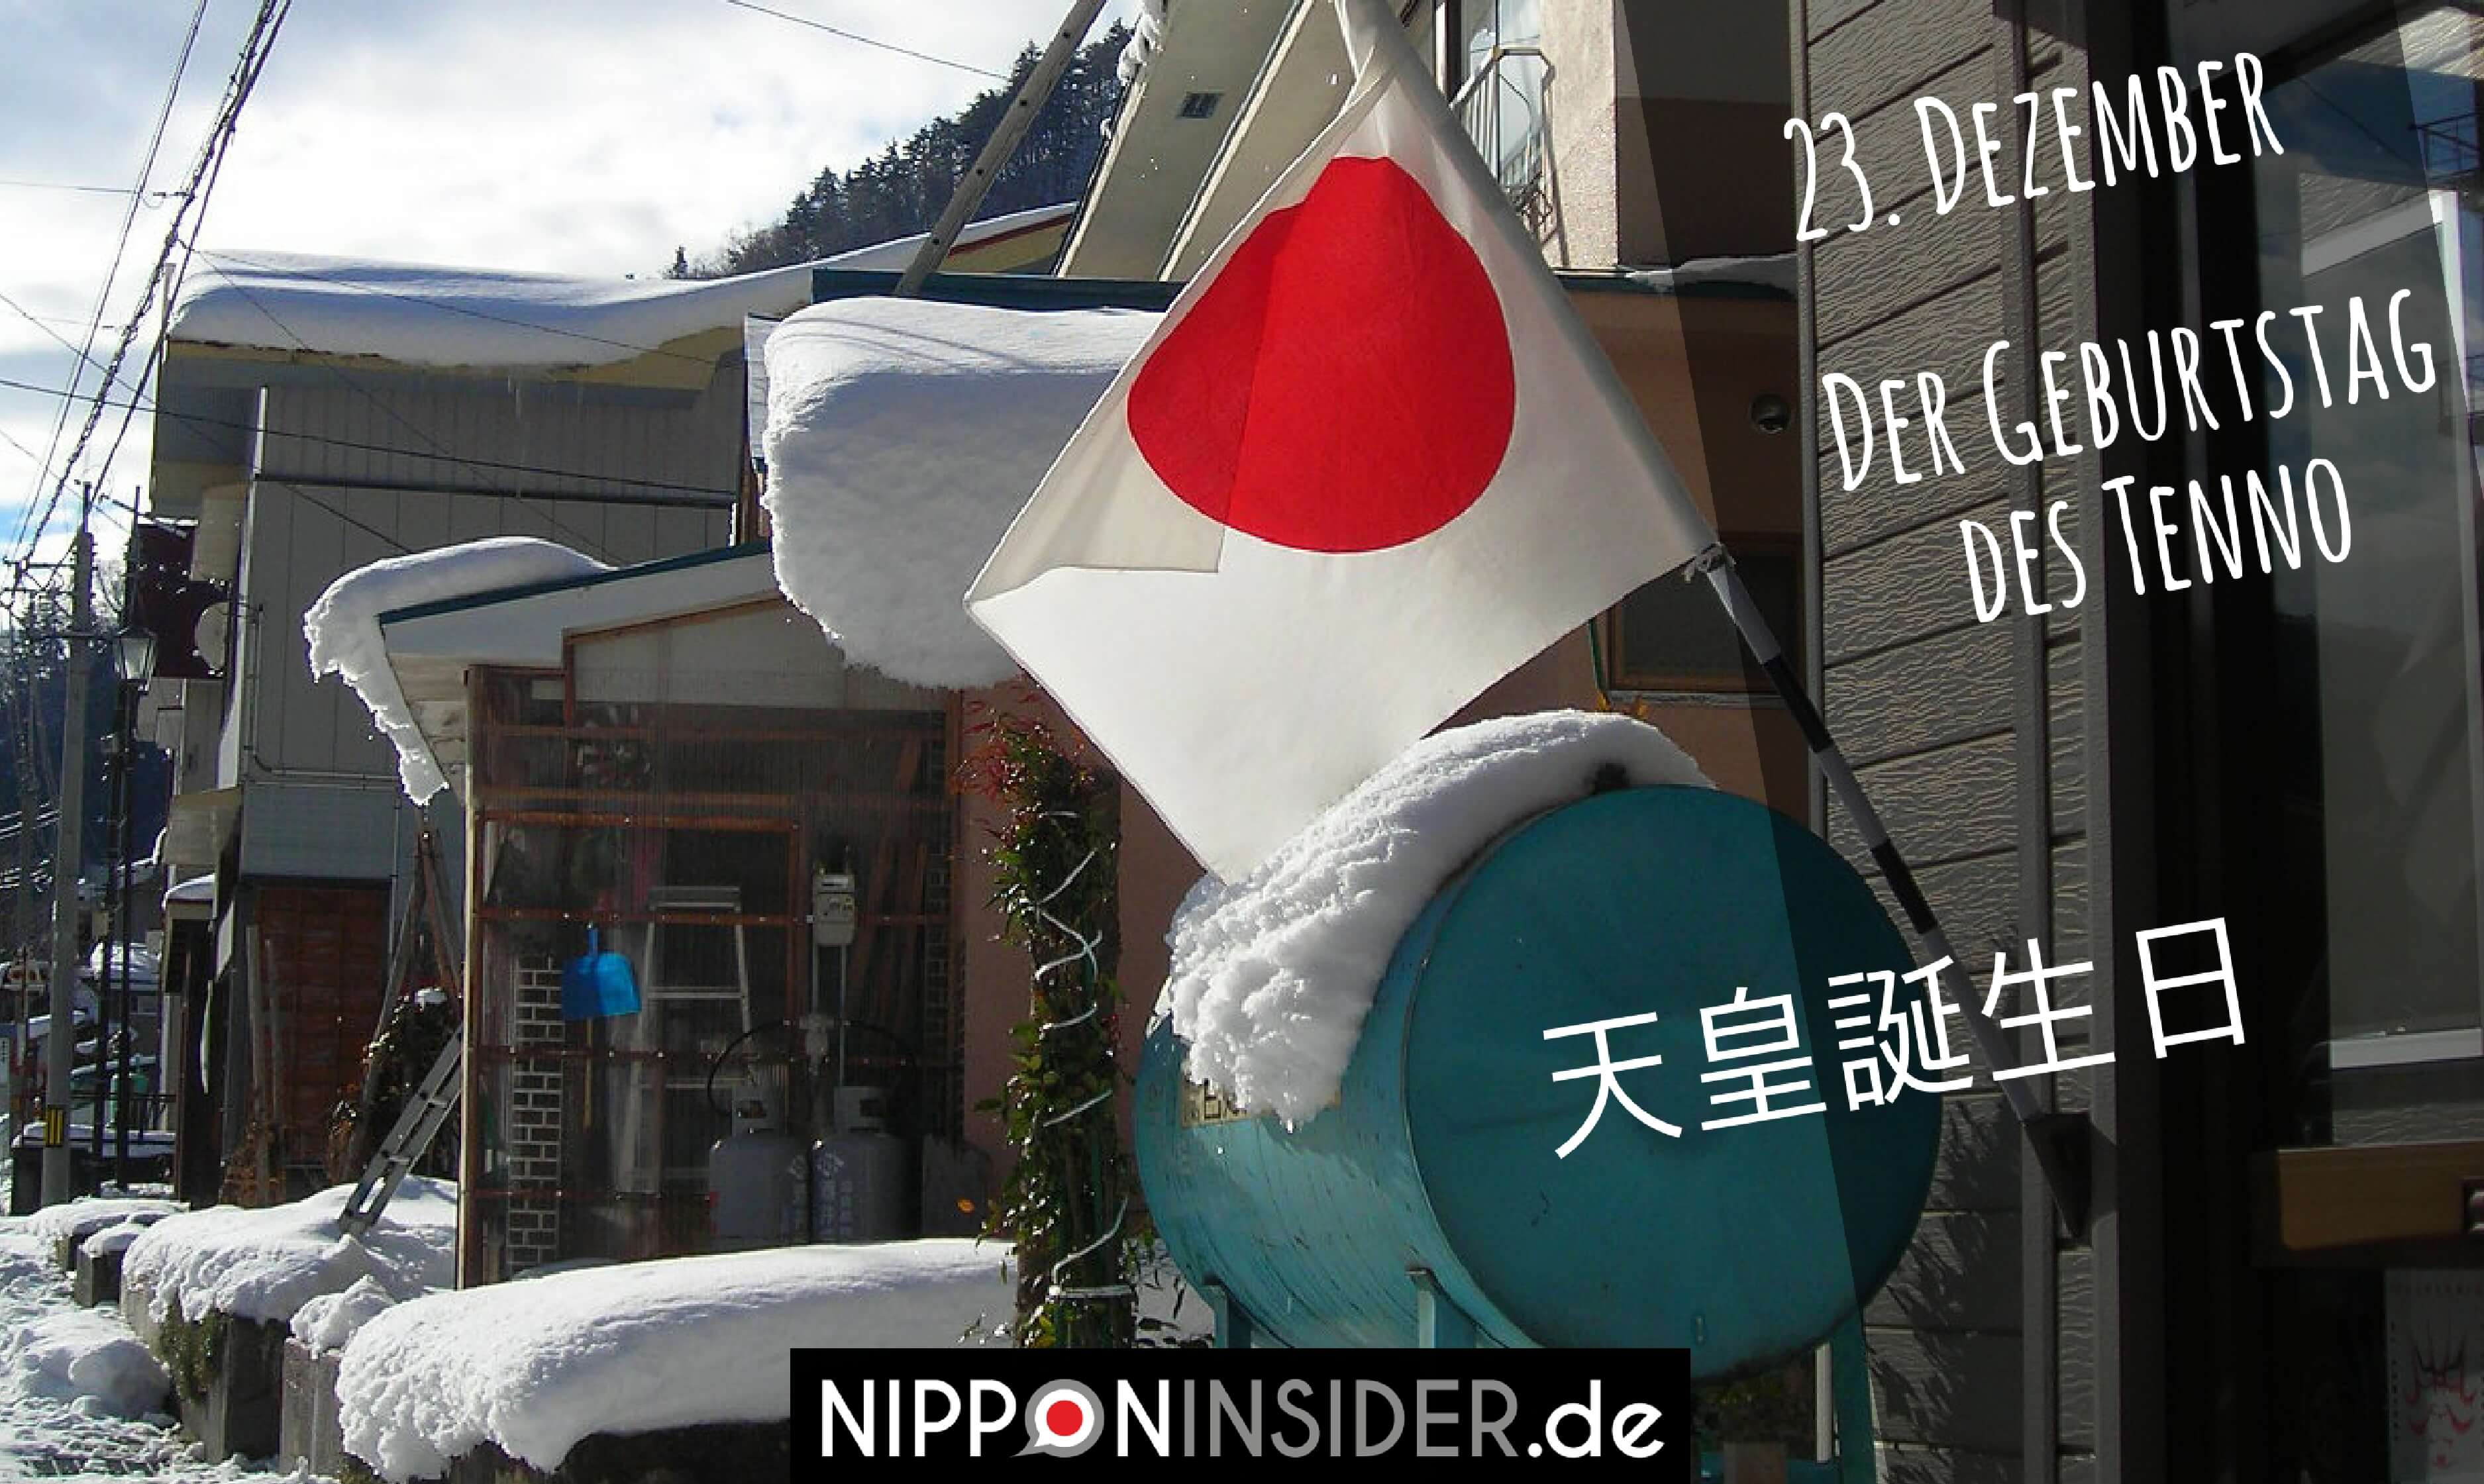 japanischer Feiertag am 23. Dezember: Tenno Tanjoubi, der Geburtstag des Tenno. Japanische Flagge vor einem Haus im Schnee | Nipponinsider.de